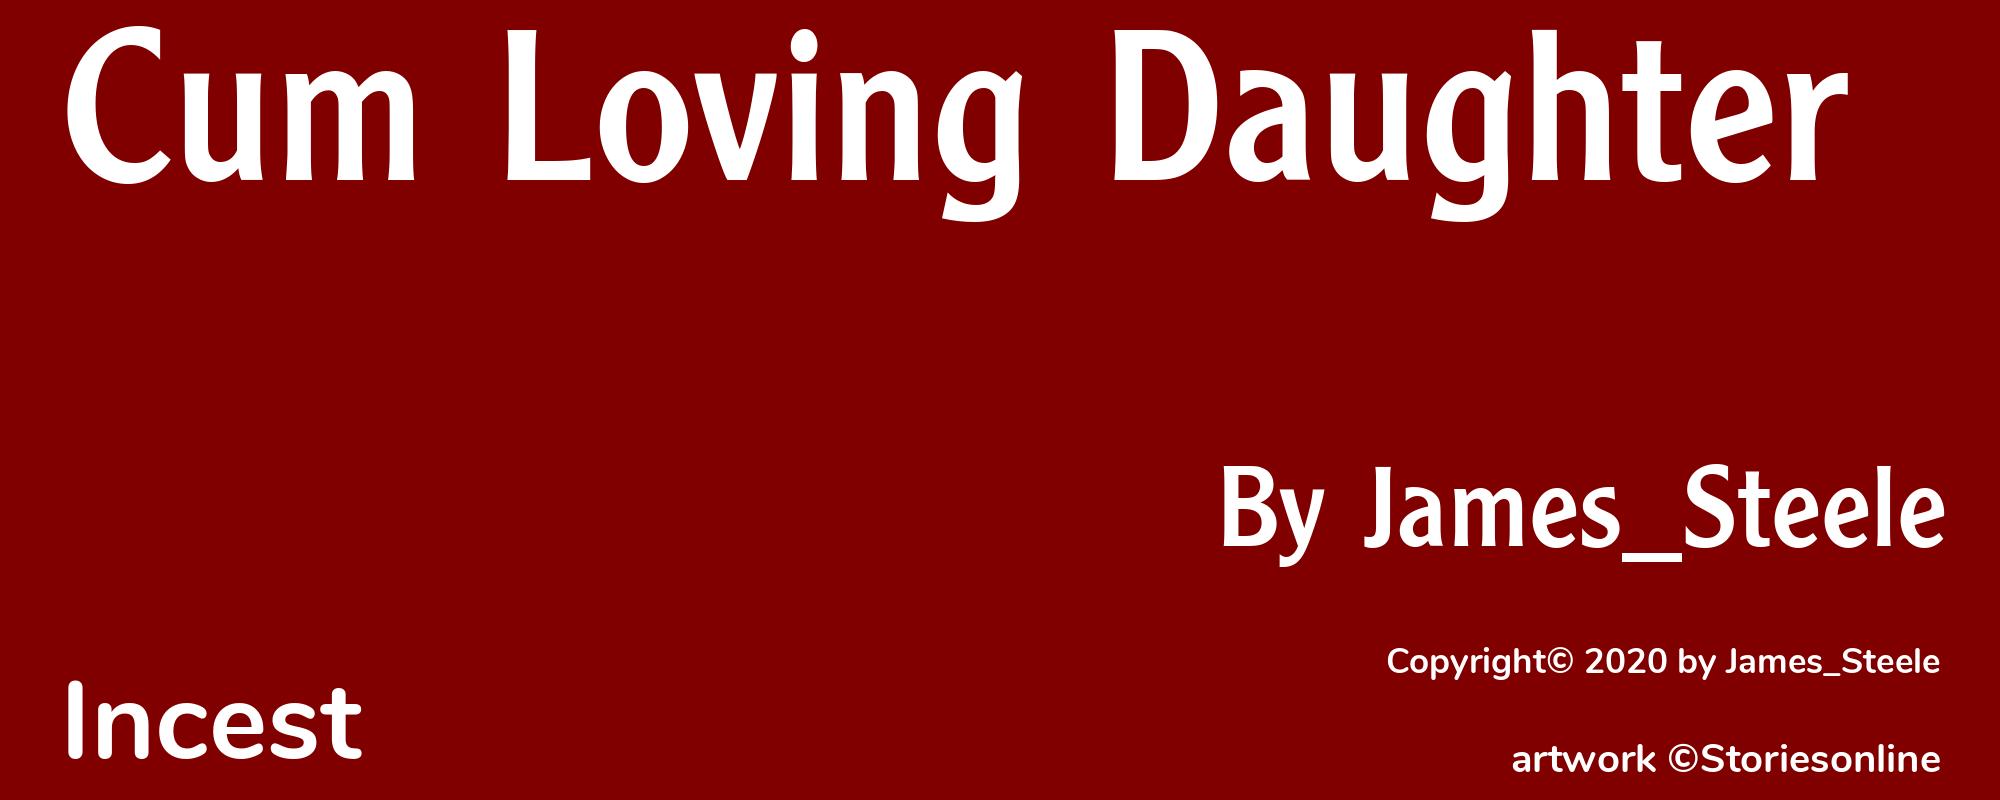 Cum Loving Daughter - Cover